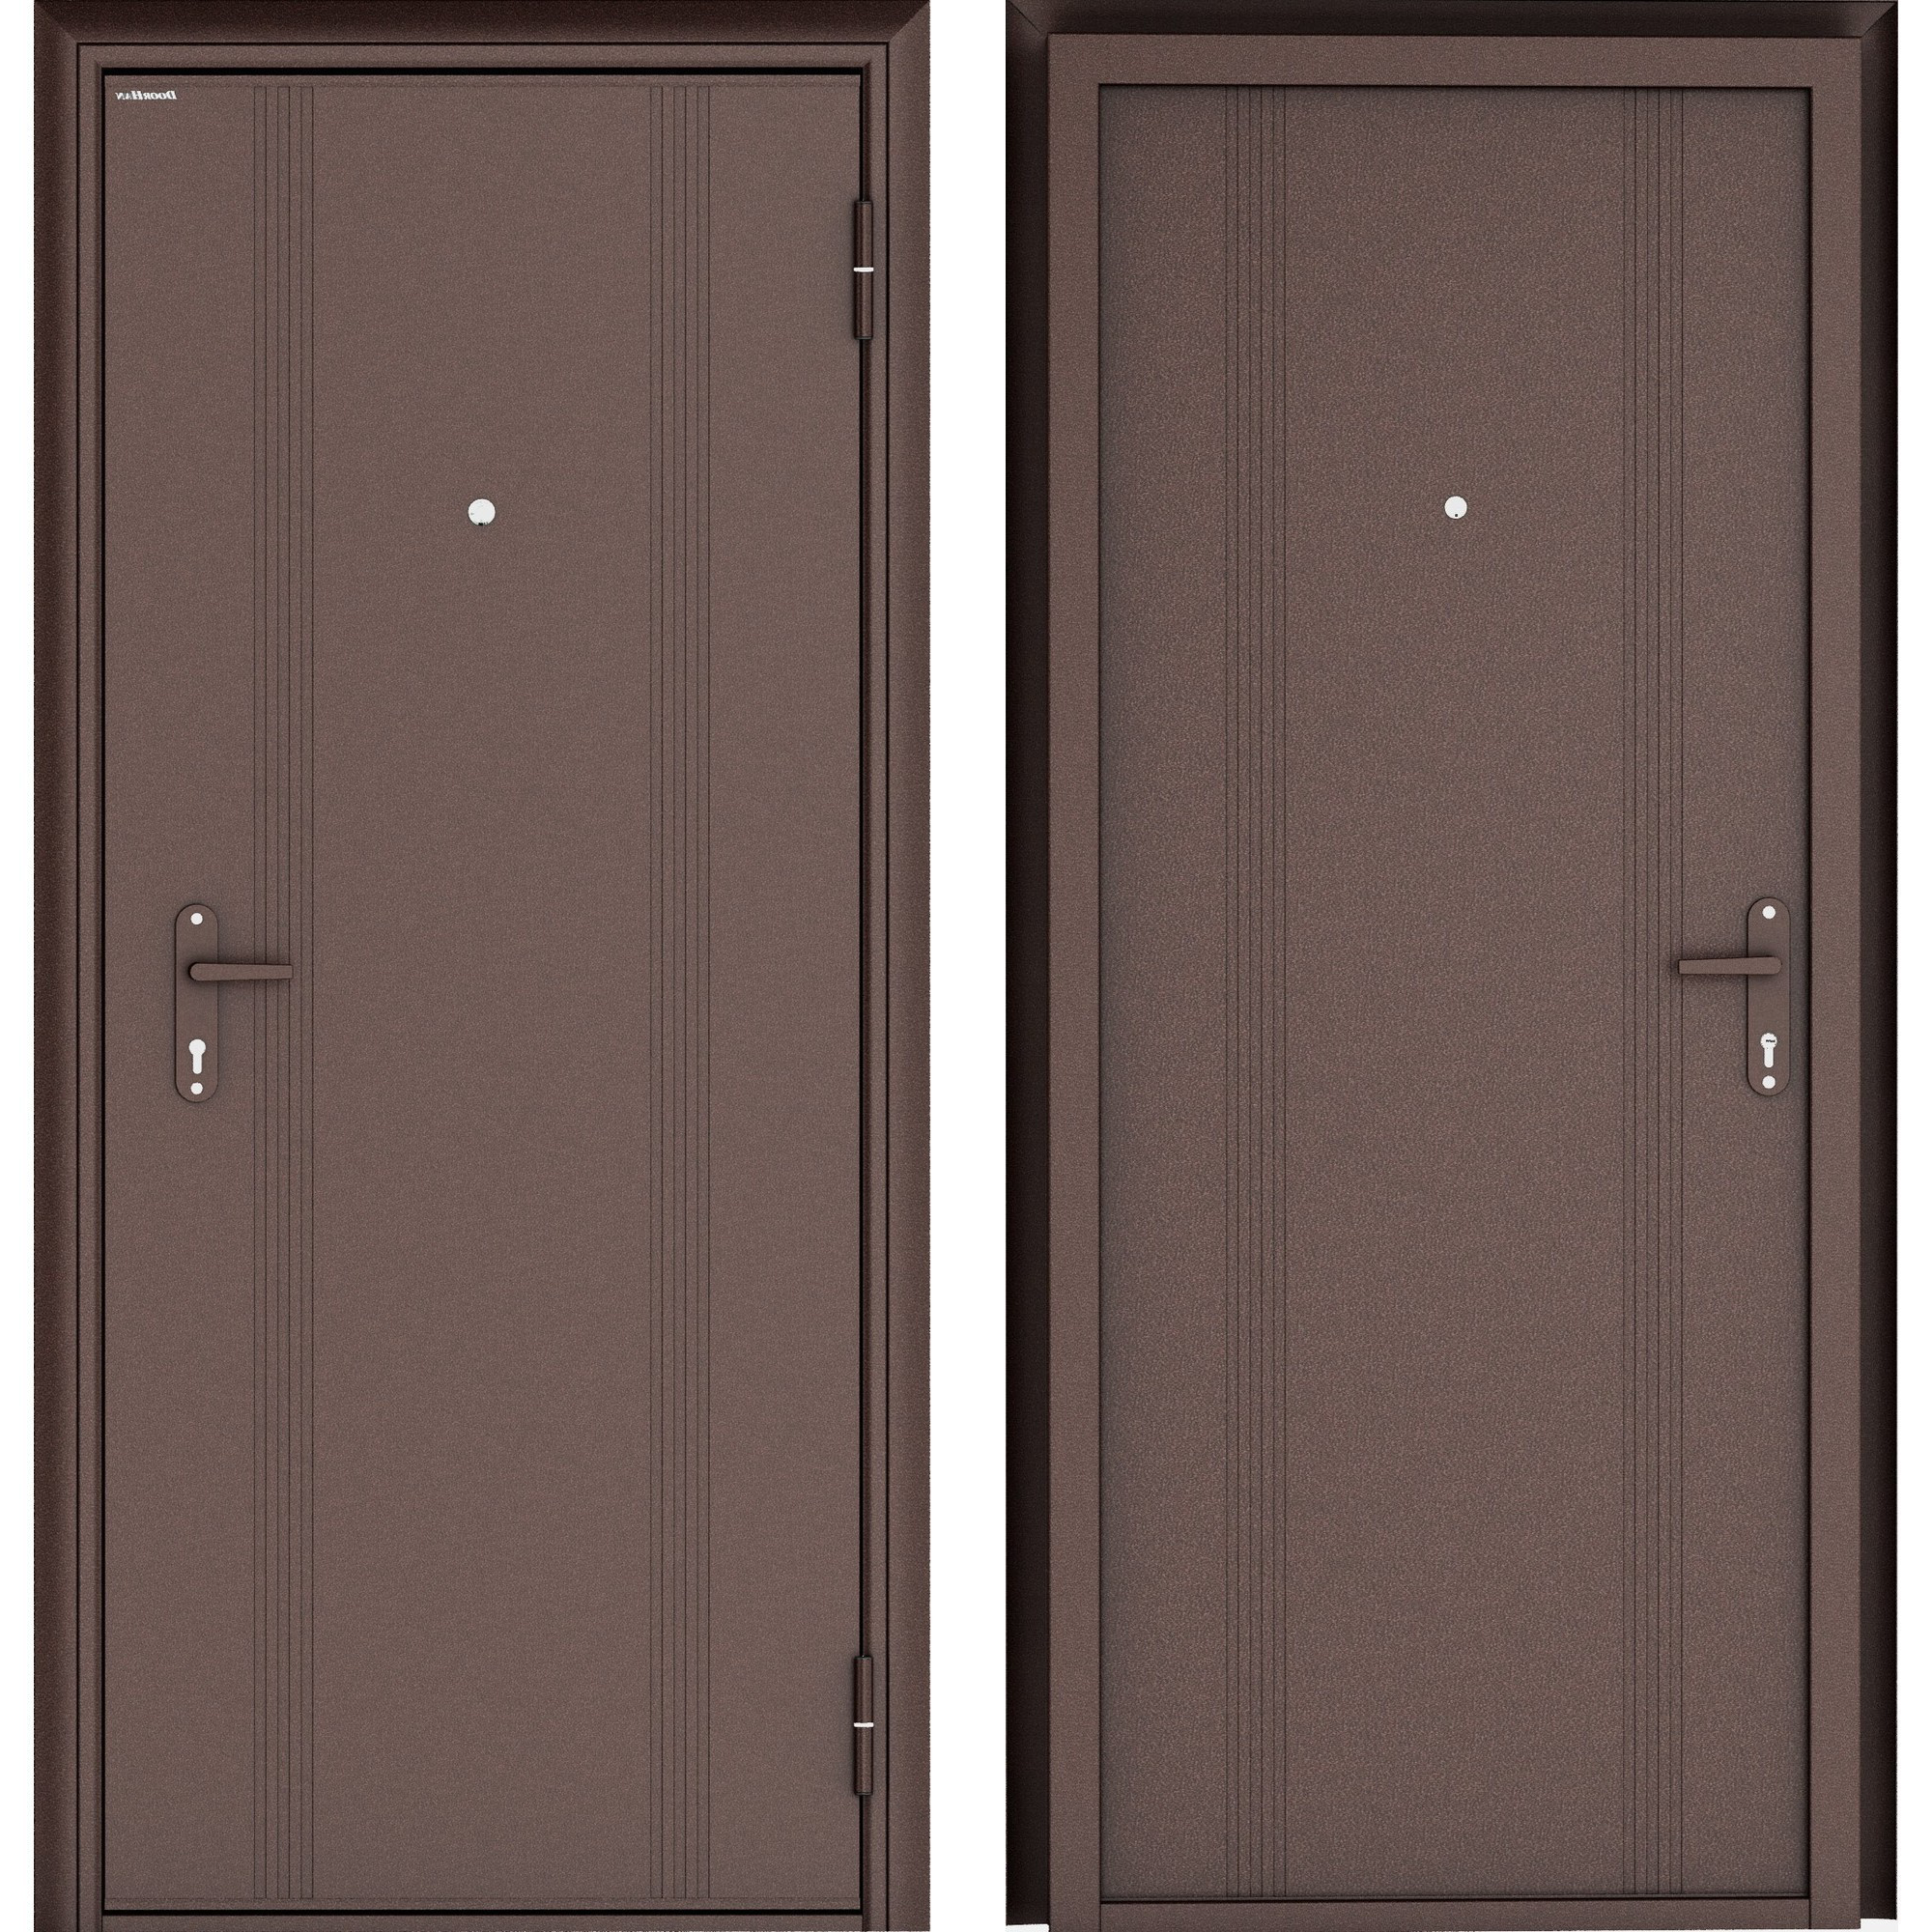 16802323 Дверь входная металлическая Эко, 980 мм, правая, цвет антик медь STLM-0007193 DOORHAN